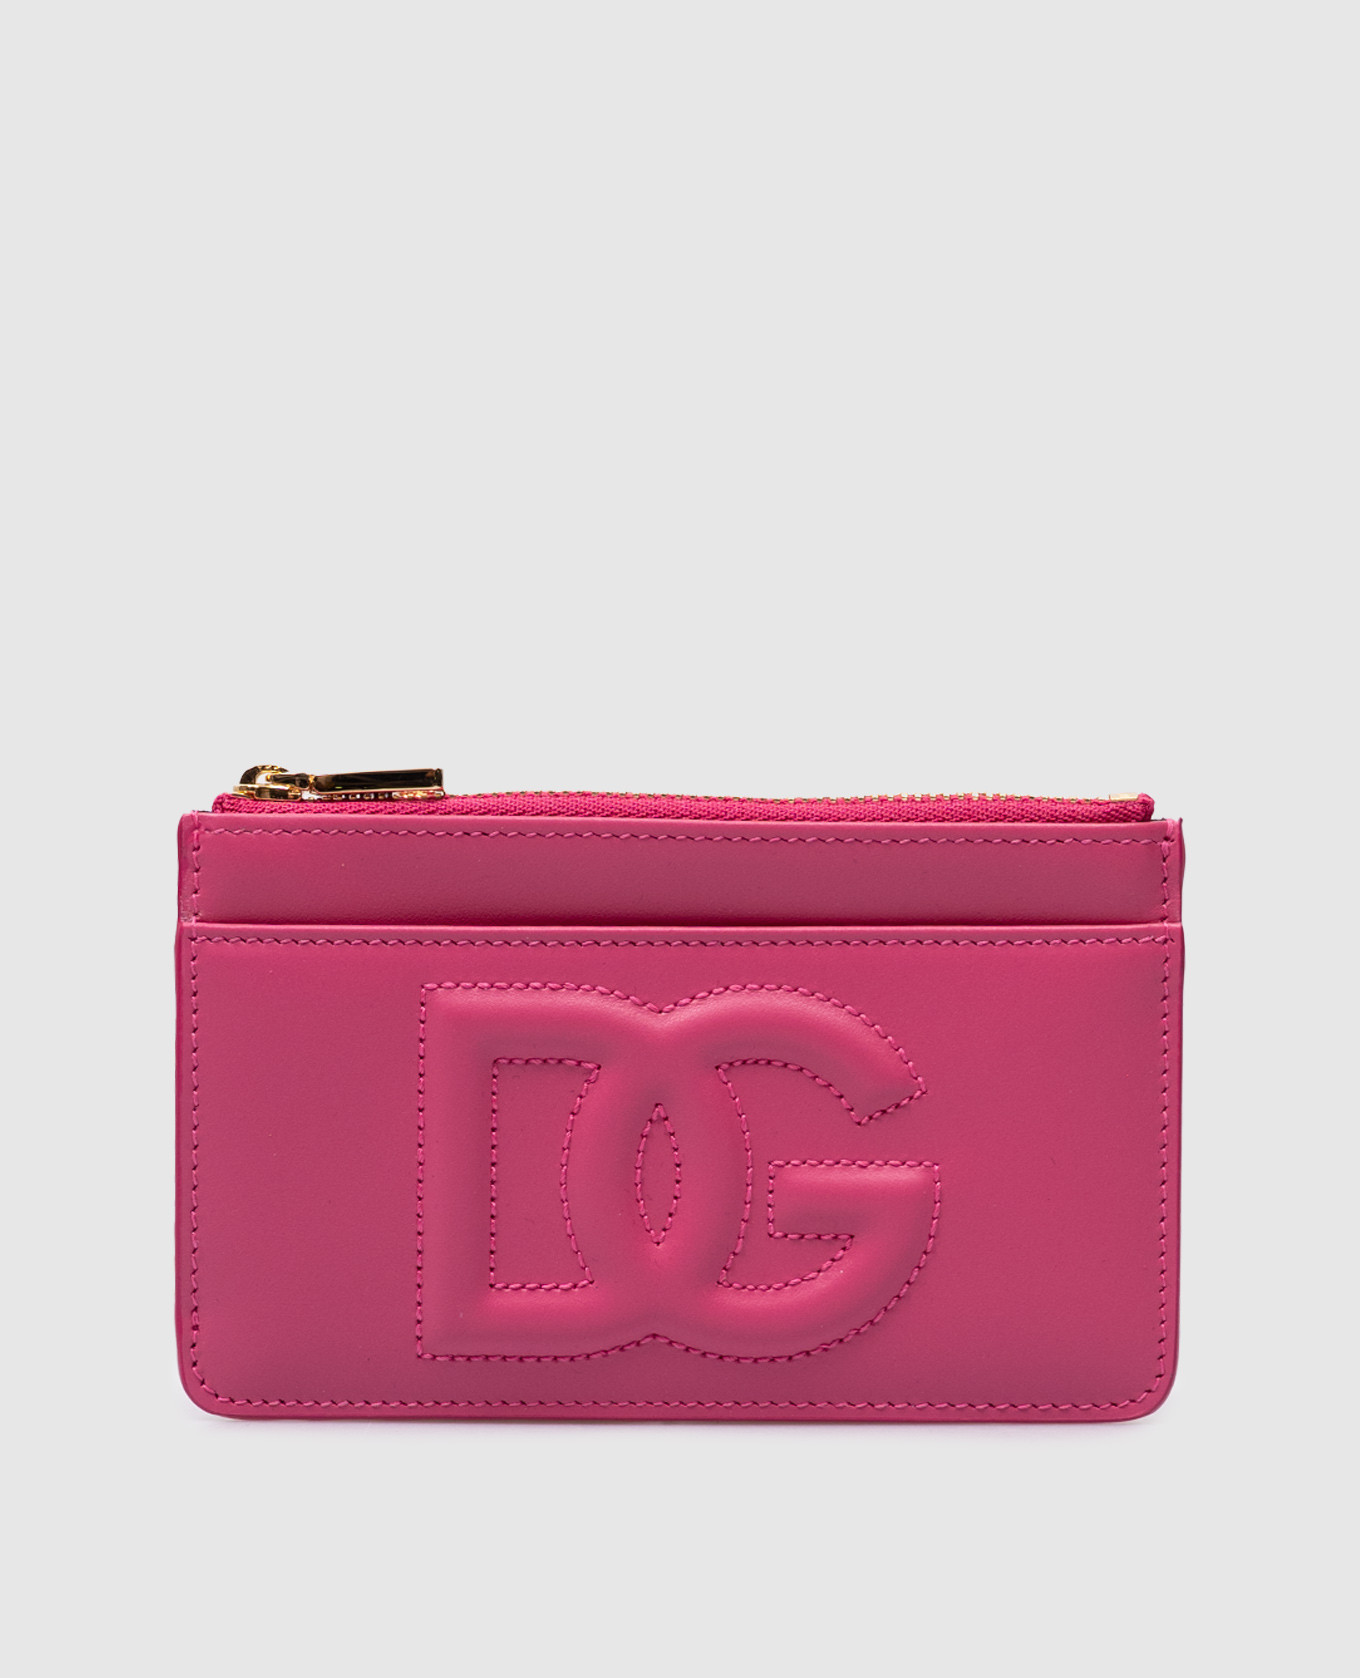 DG LOGO pink leather wallet